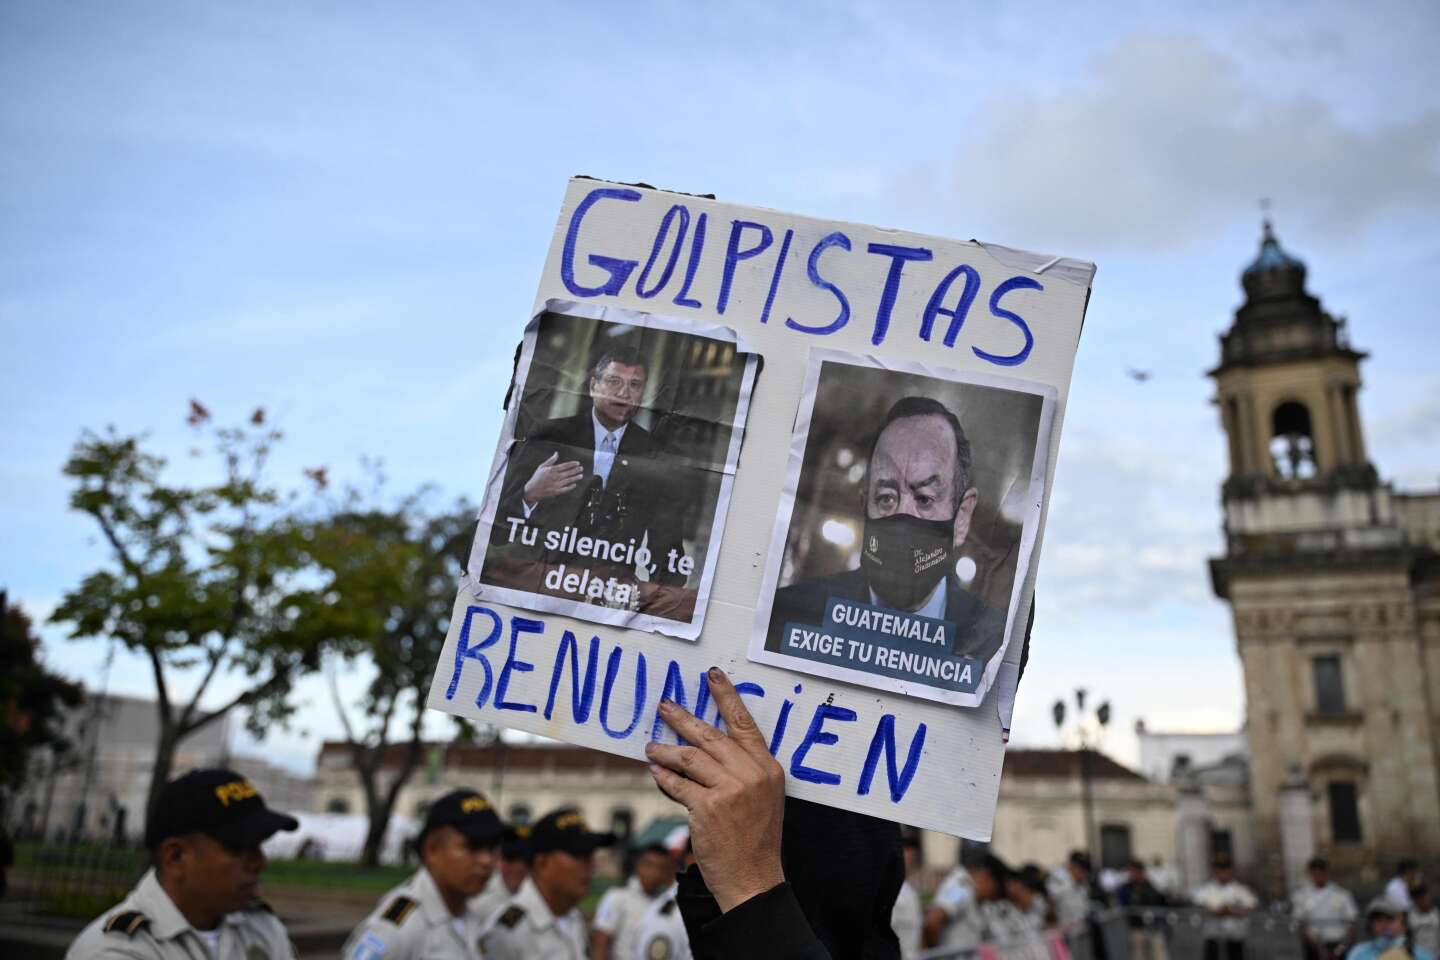 In Guatemala veroordeelt de nieuwgekozen president Bernardo Arevalo de “aanhoudende staatsgreep” om te voorkomen dat hij aan de macht komt.